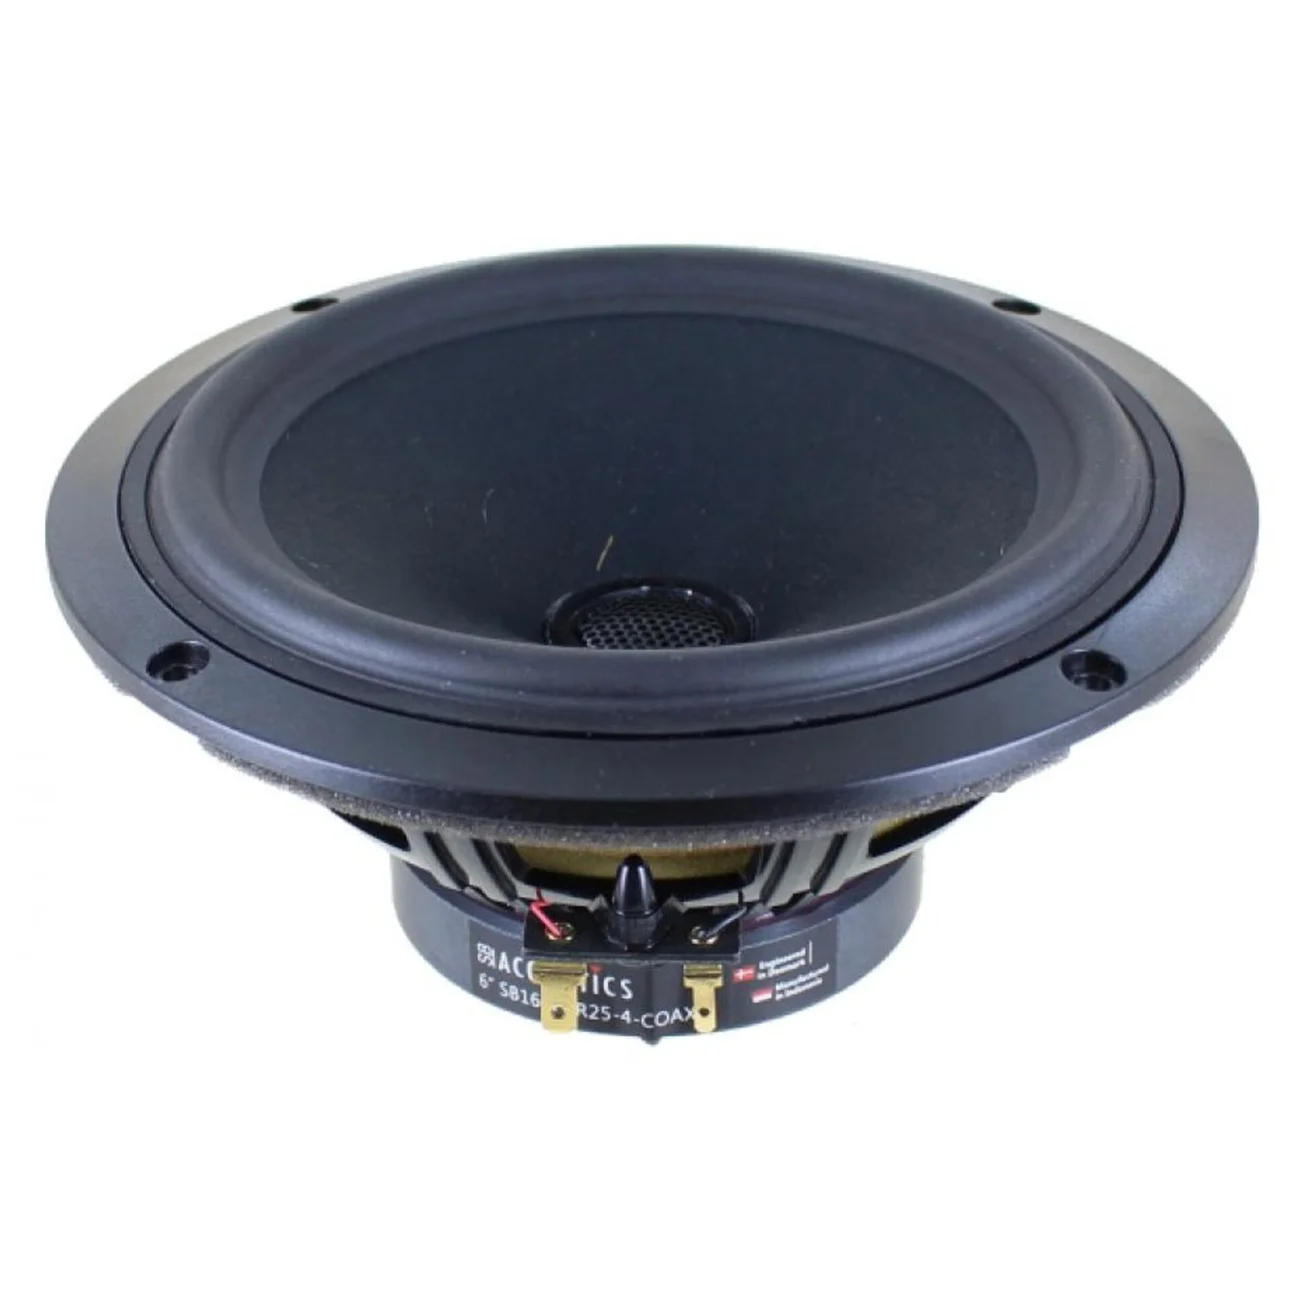 Coaxiale hi-fi - SB Acoustics SB16PFCR25-4-COAX, audioclub.ro